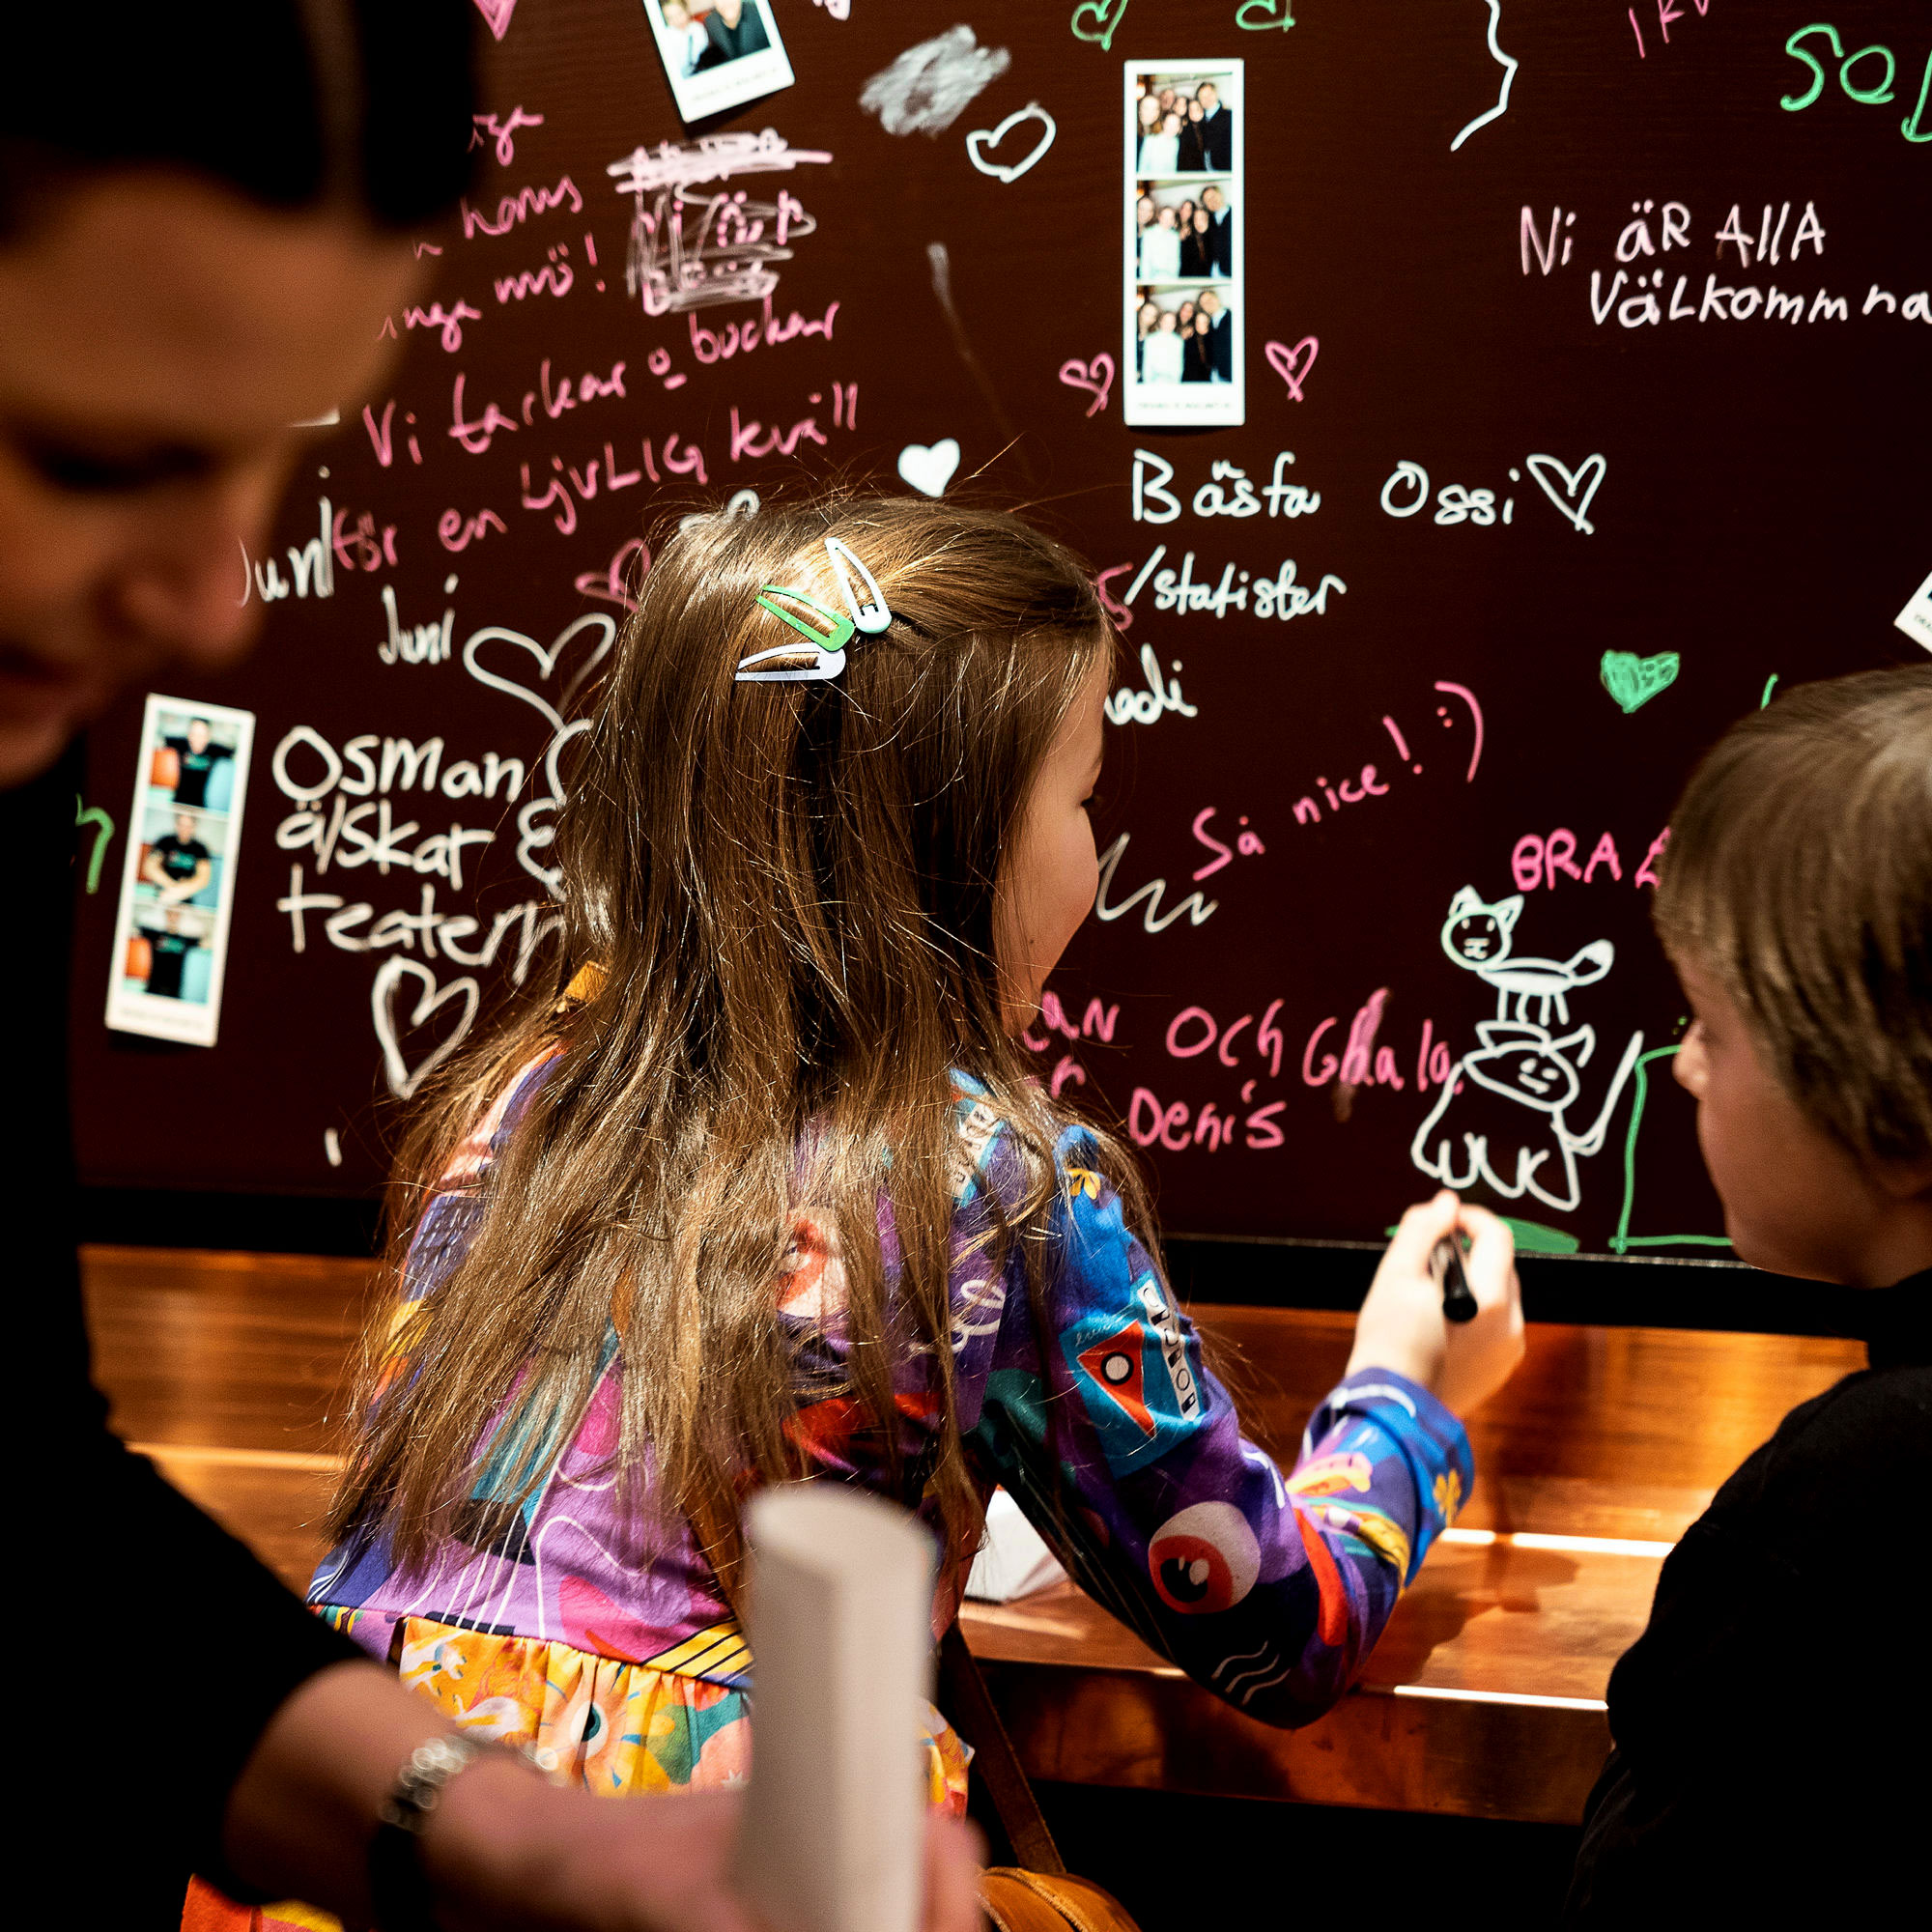 Barn klottrar med färgade pennor på en vägg i foajén.